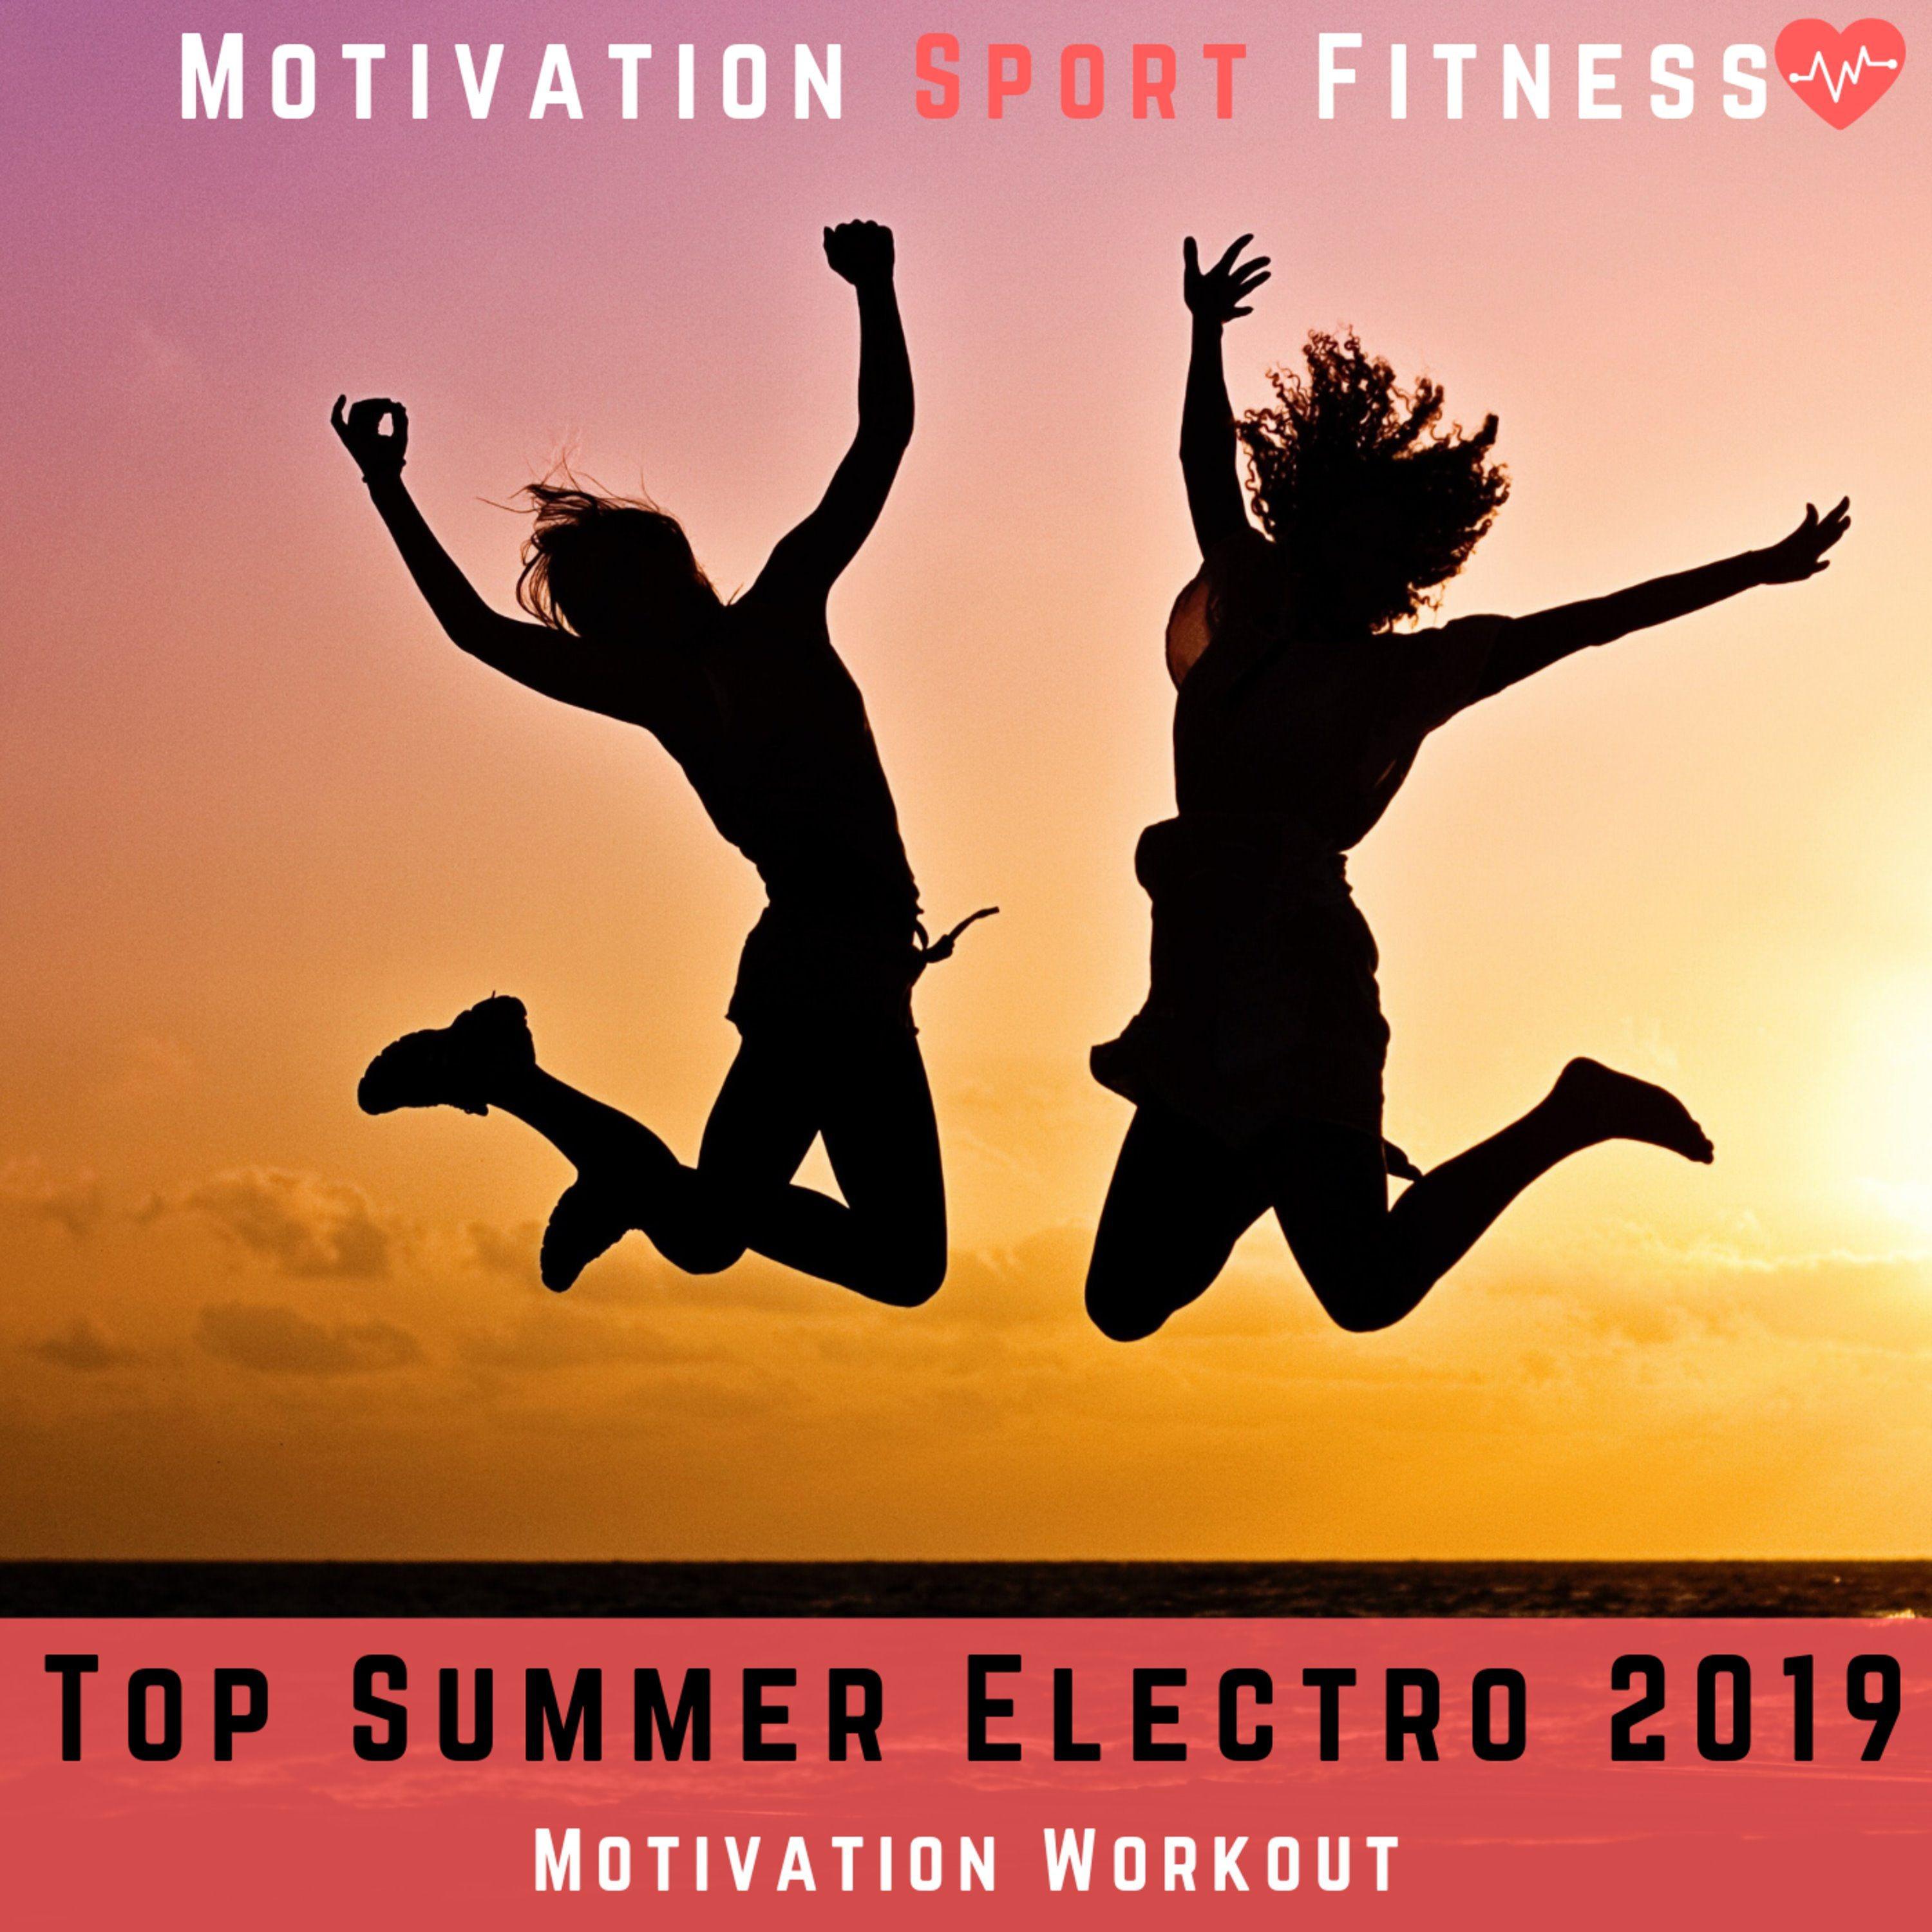 Top Summer Electro 2019